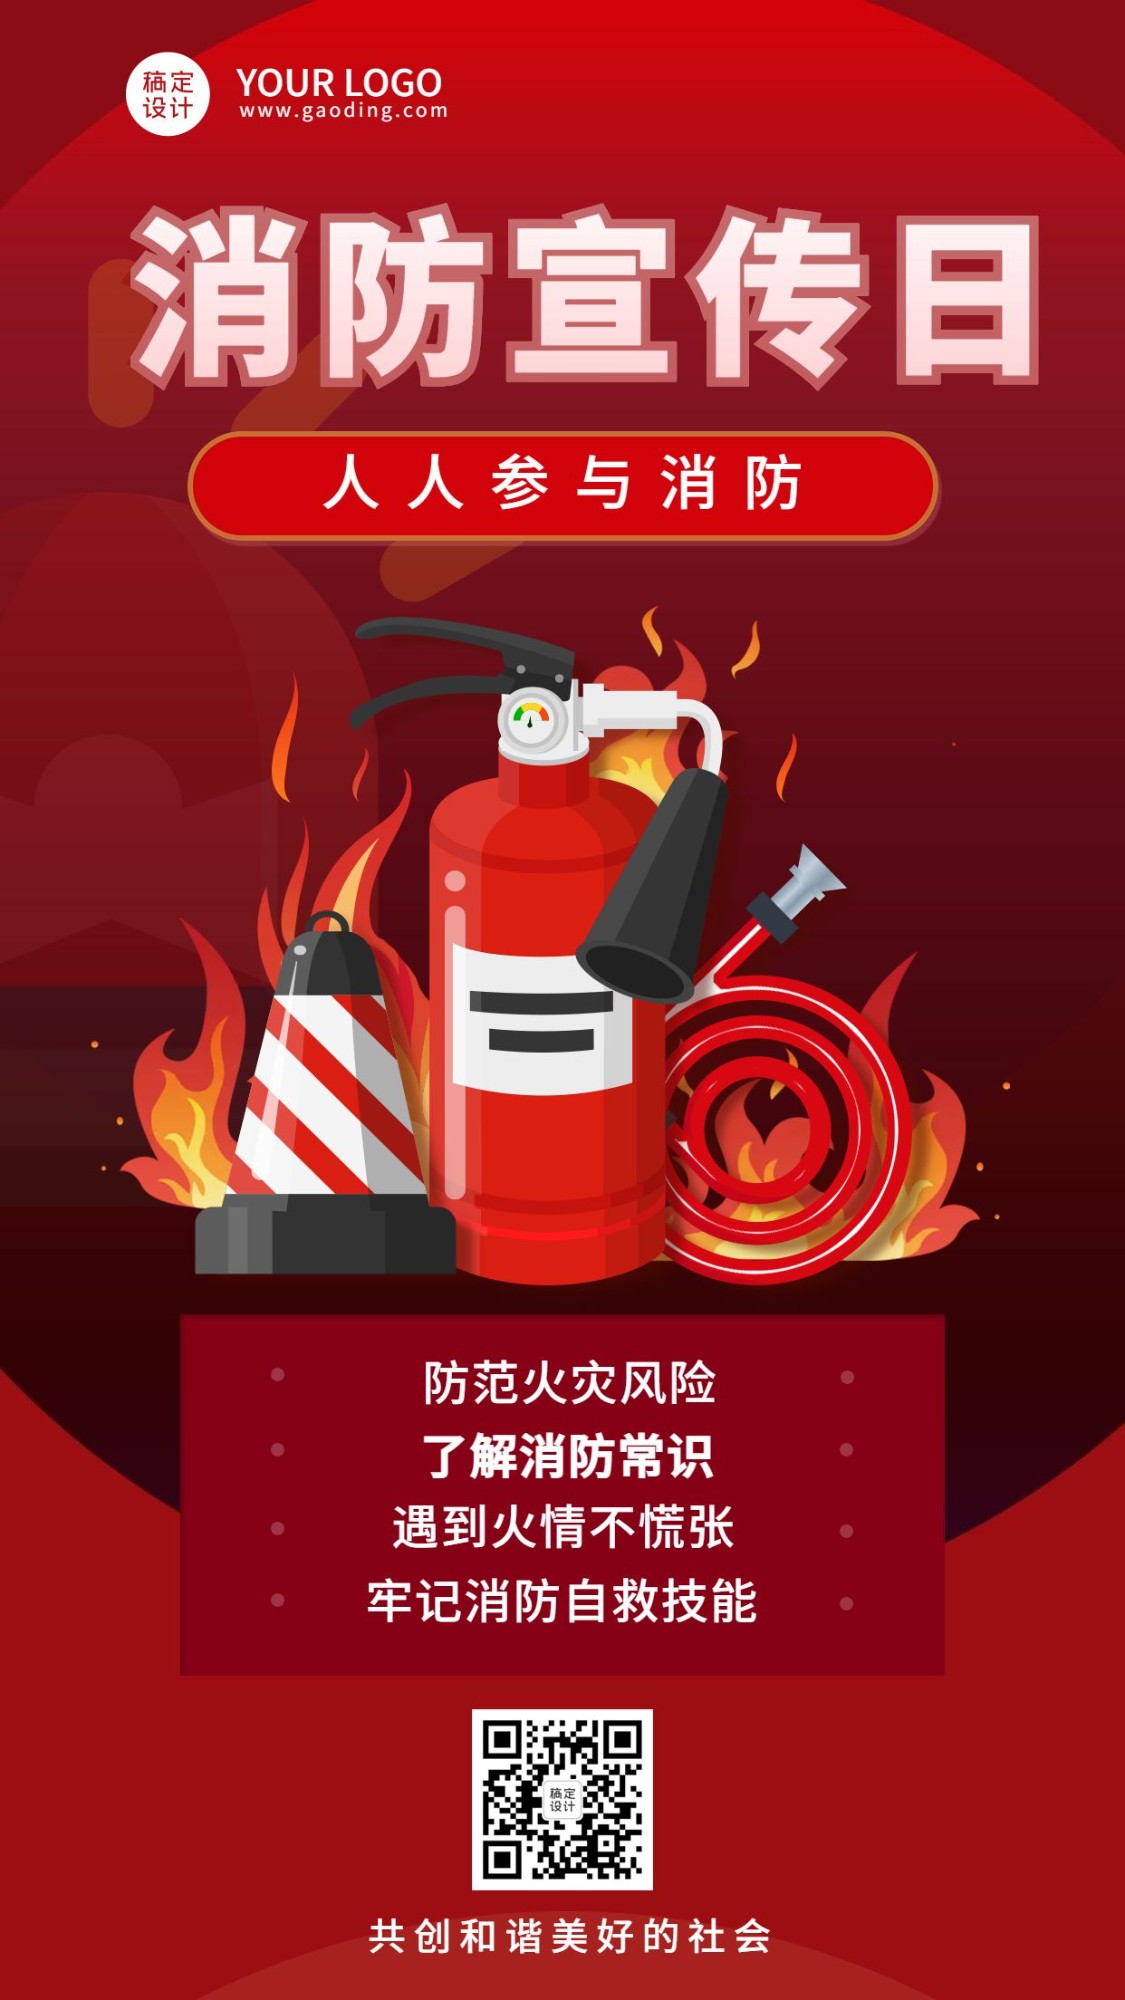 119消防宣传日火灾预警知识科普手机海报预览效果